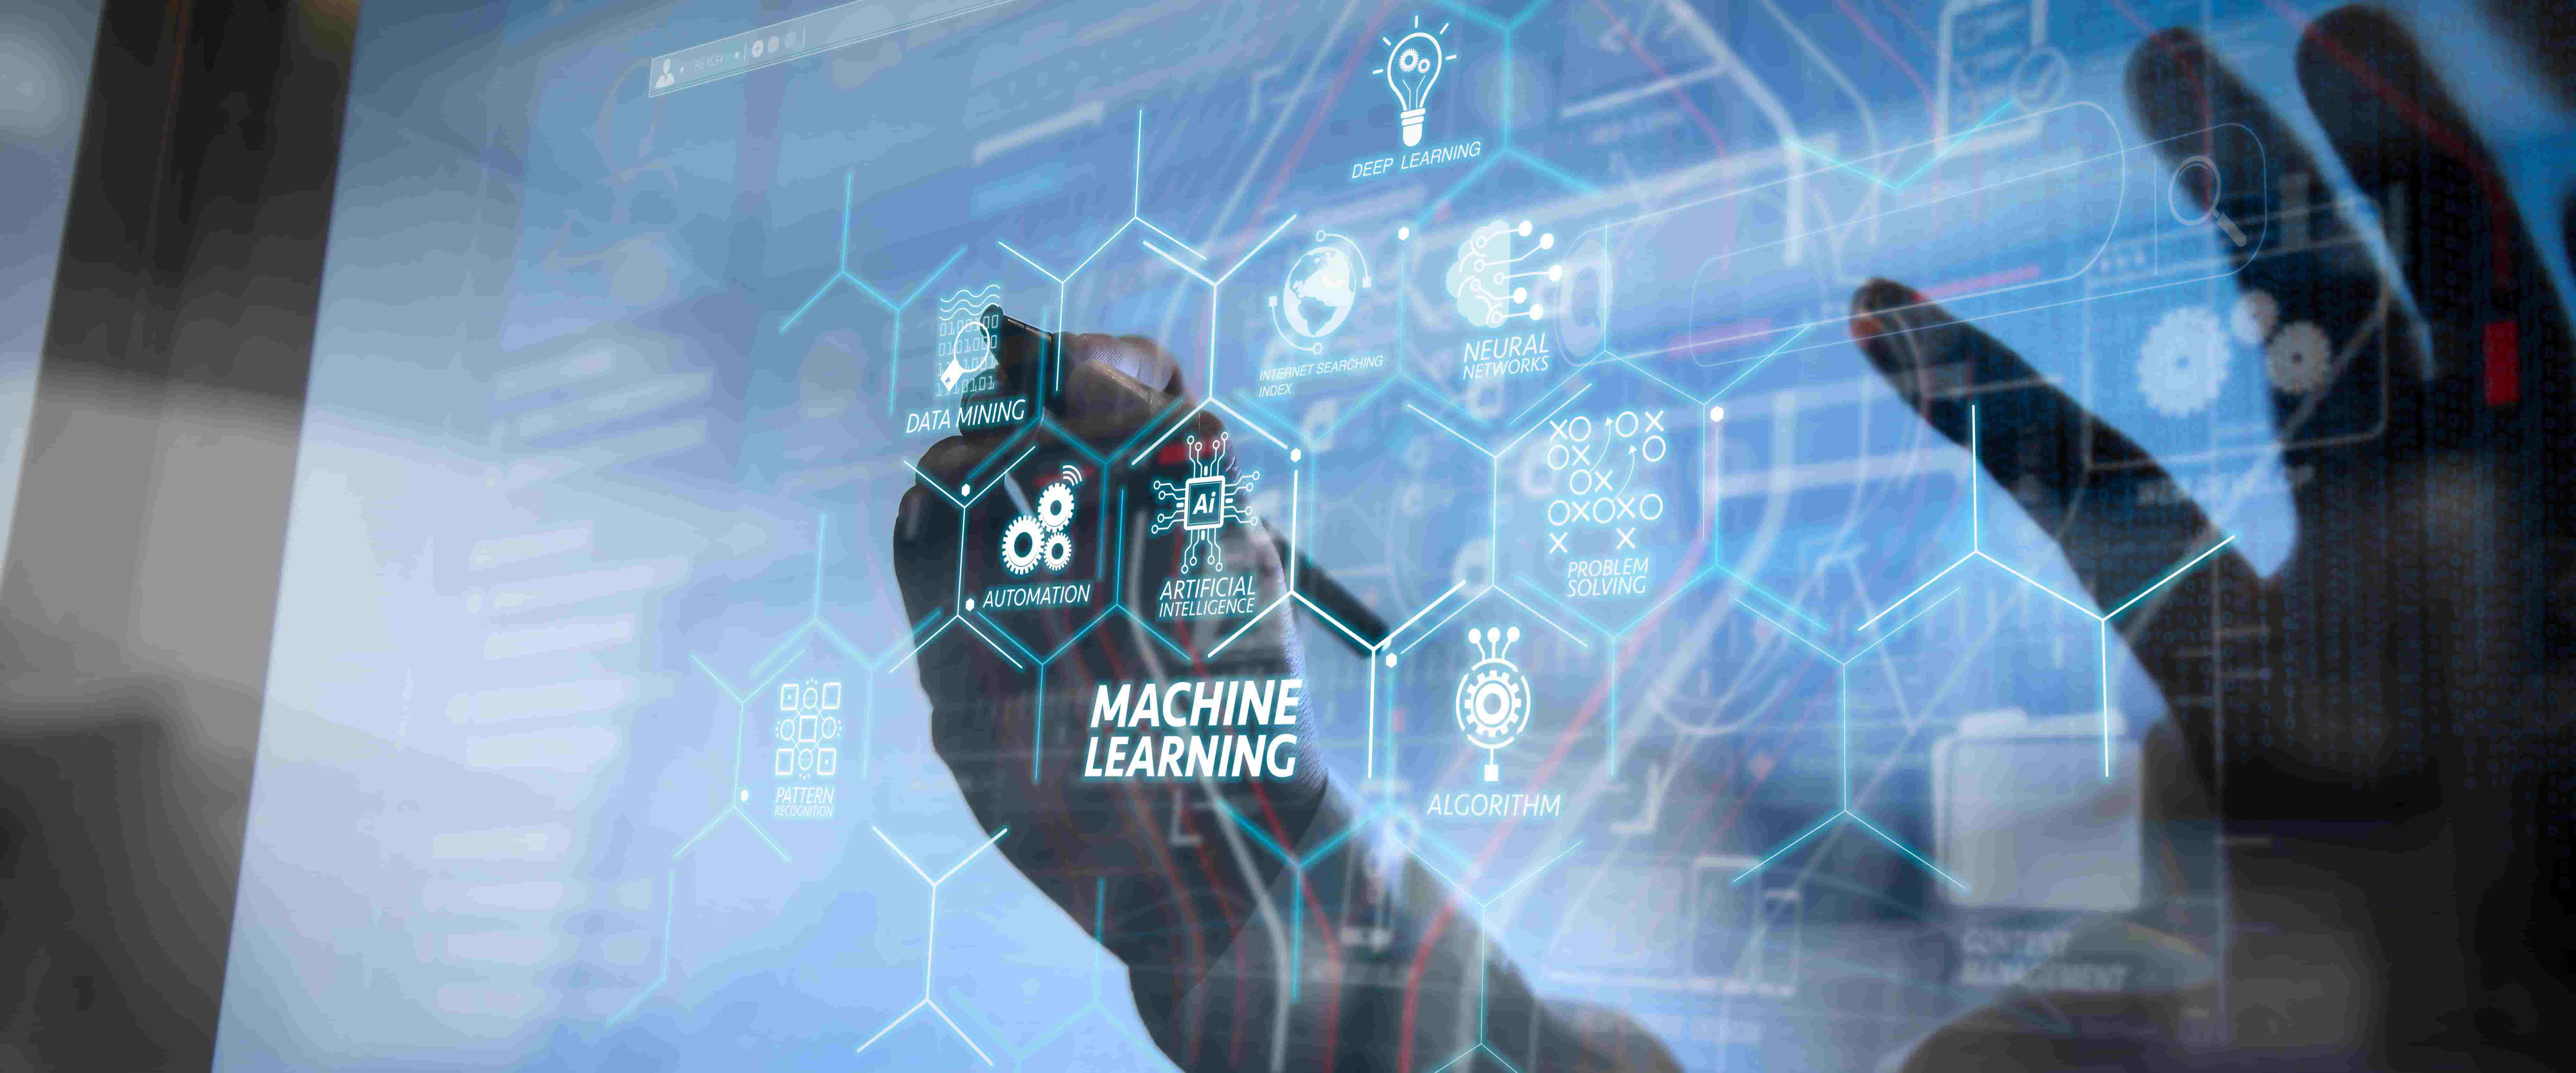 图片展示了一只手触摸虚拟界面，界面上有“机器学习”字样和各种与人工智能相关的符号及图标。